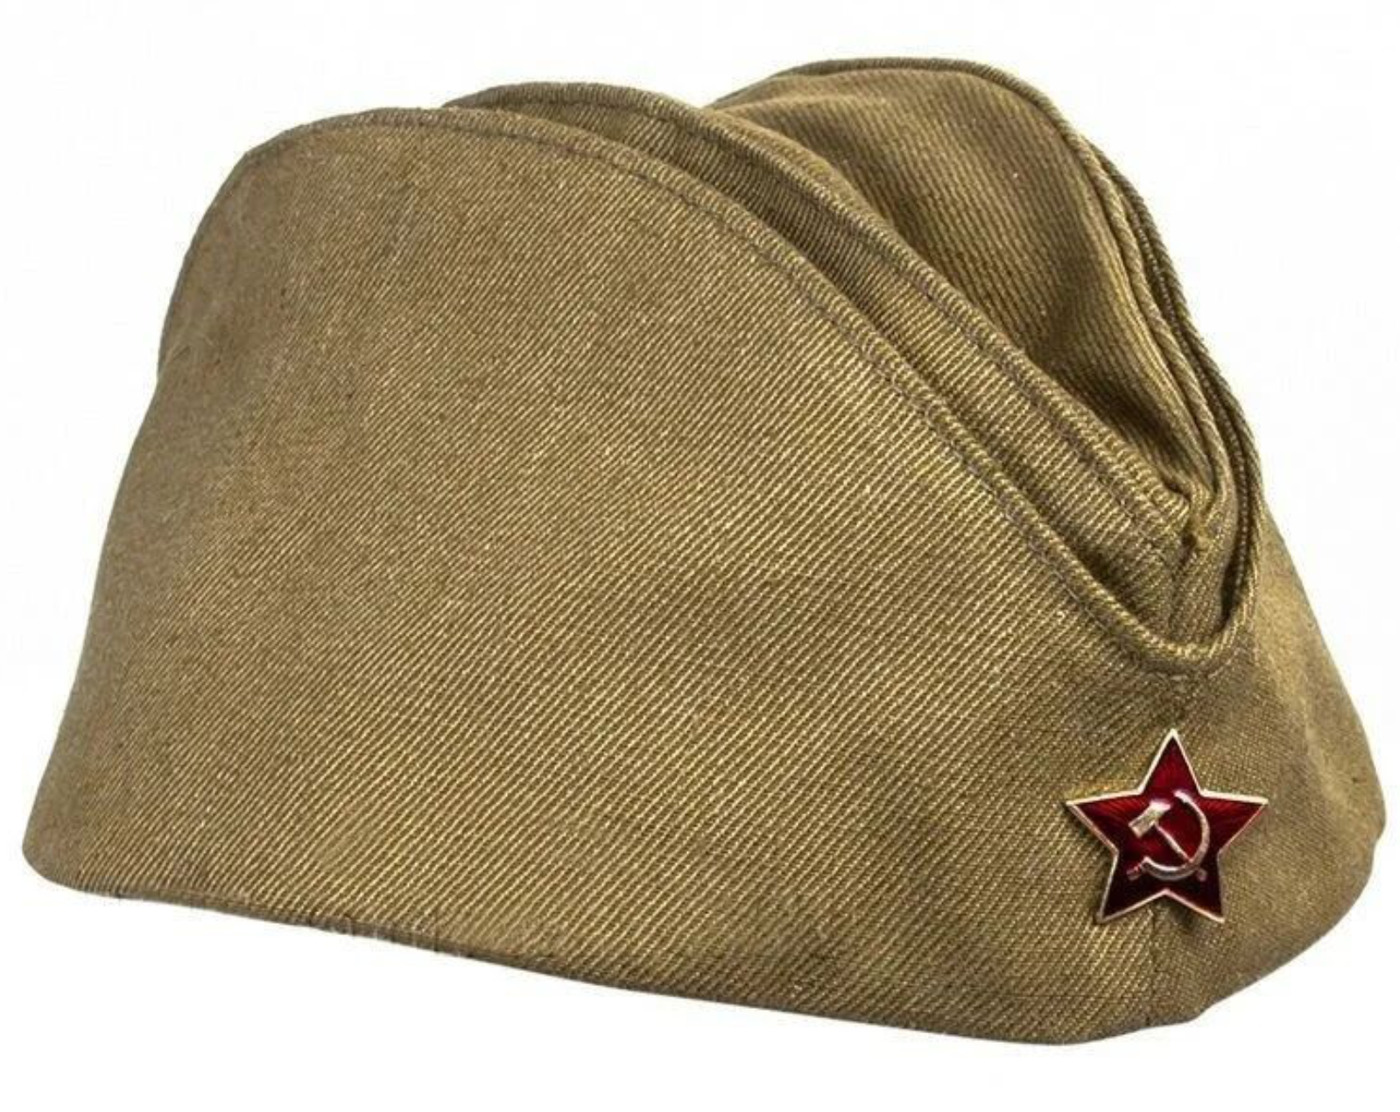 Головные уборы РККА 1941-1945